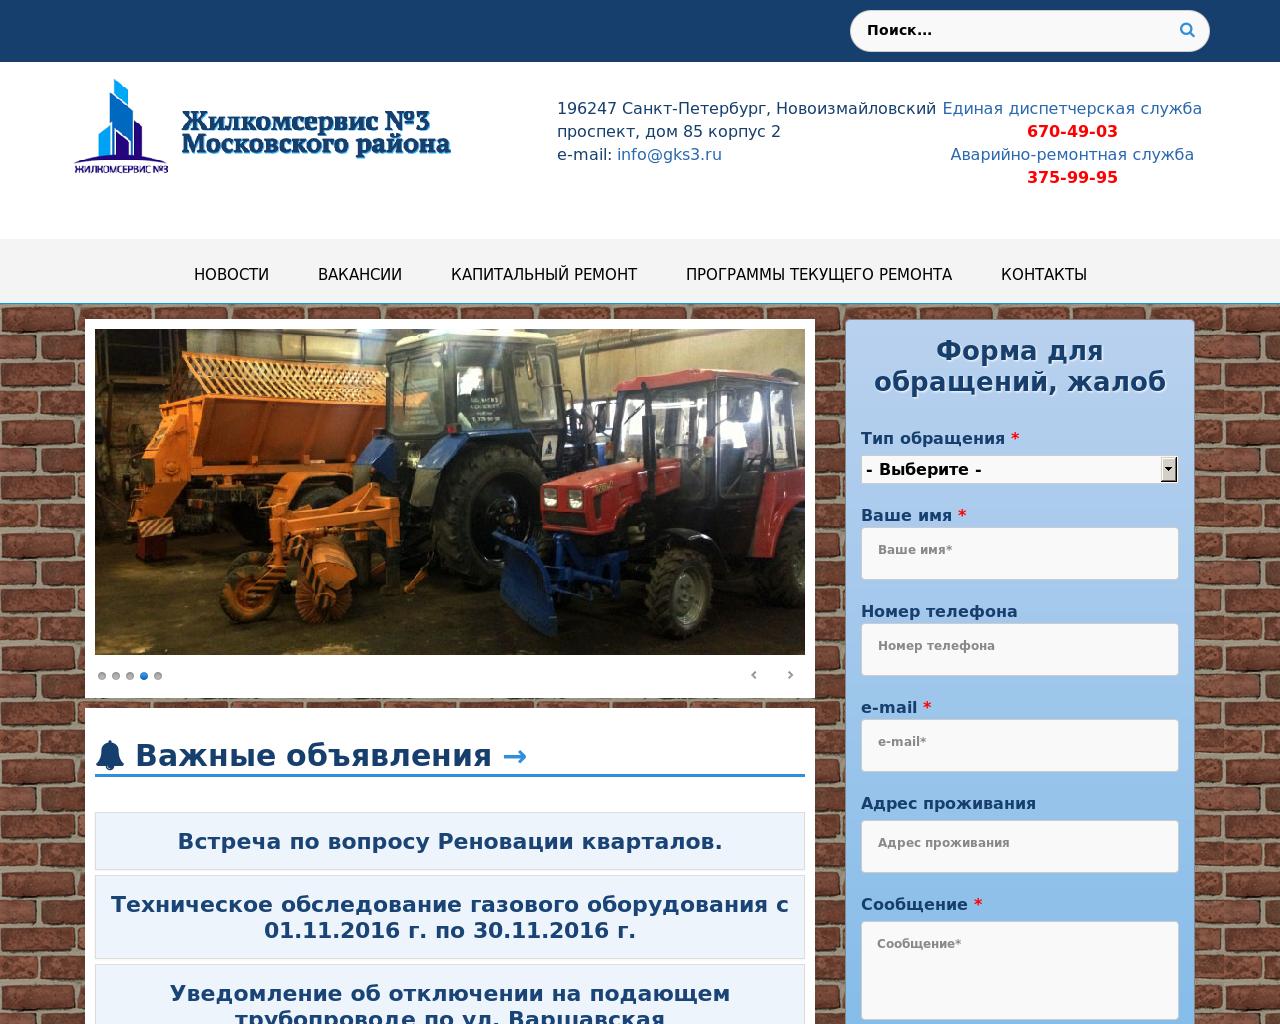 Изображение сайта gks3.ru в разрешении 1280x1024